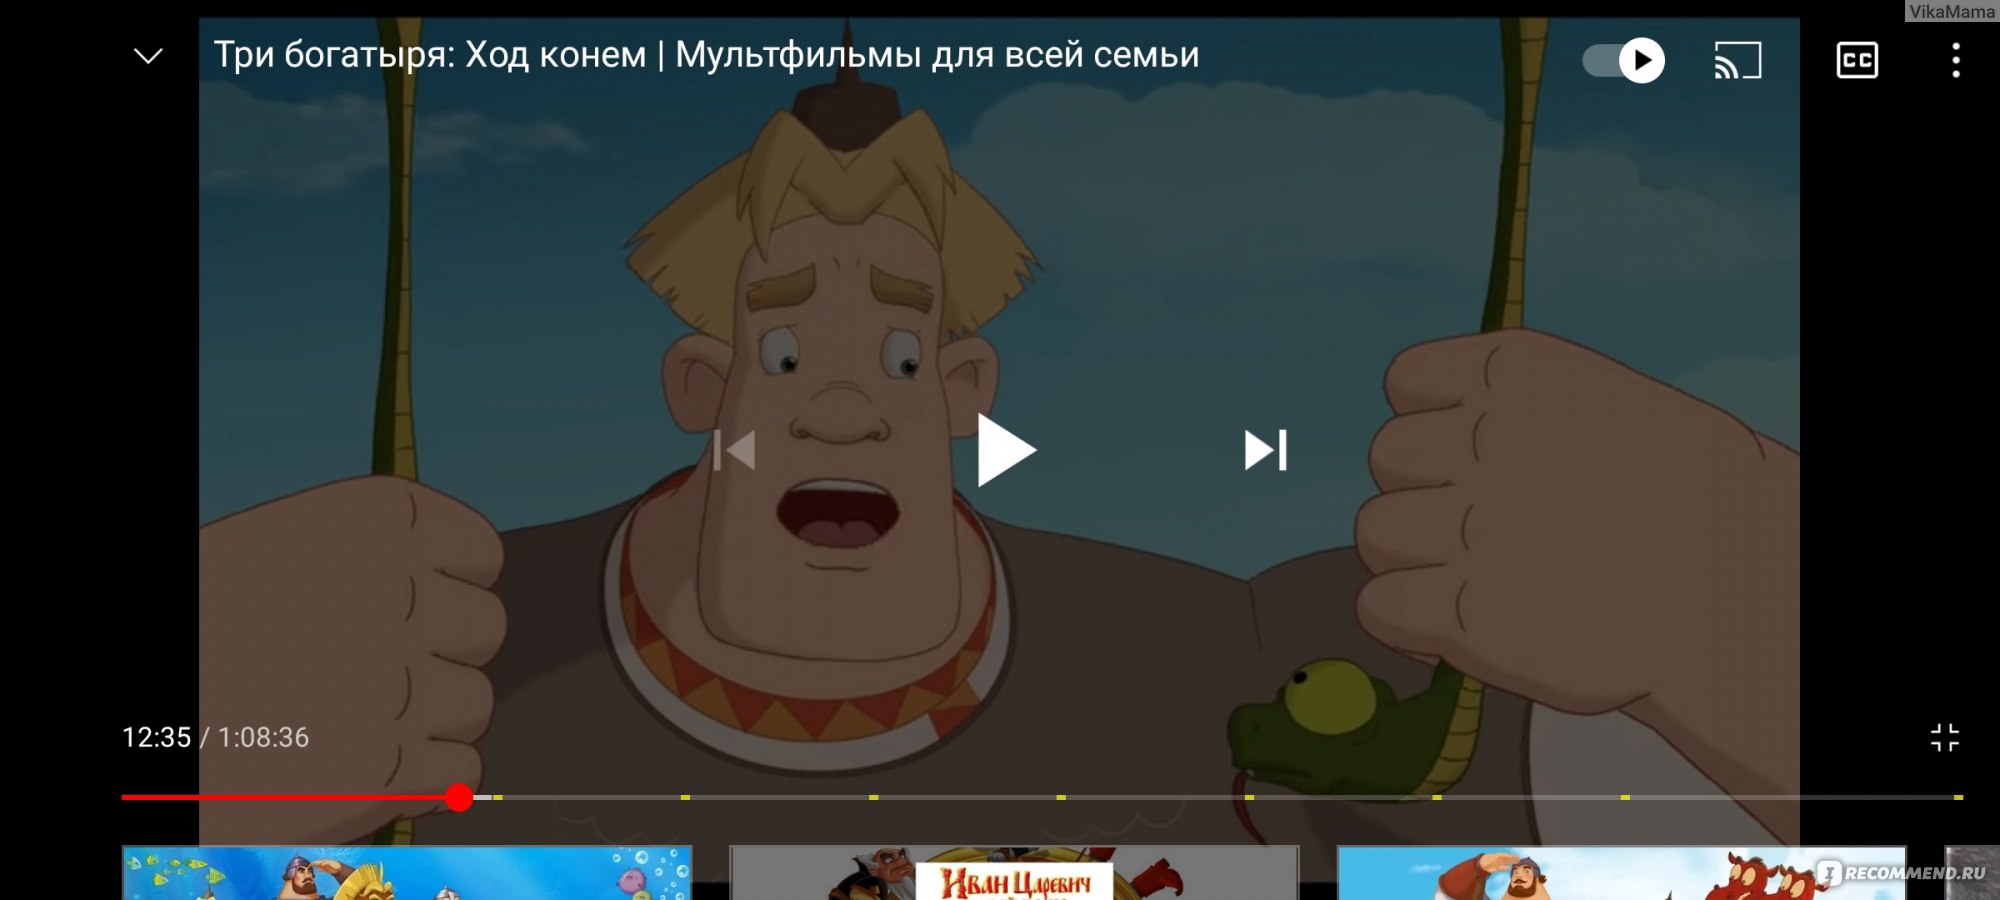 Как анимационные богатыри российскими супергероями стали | КиноРепортер